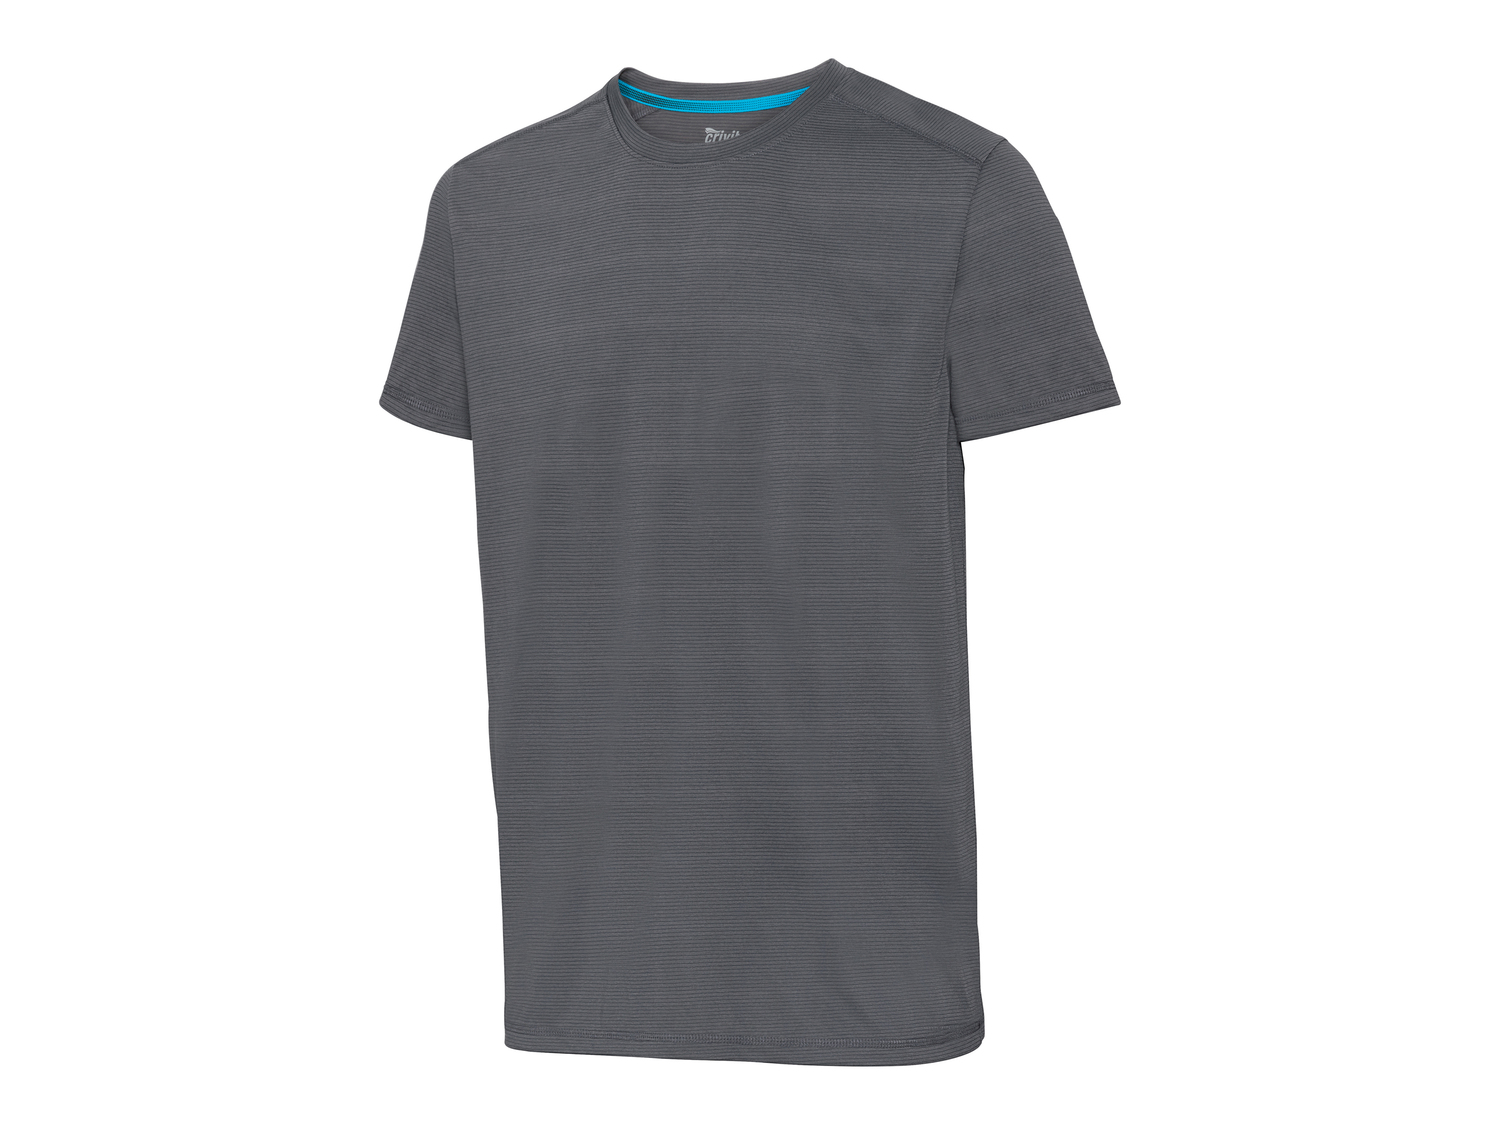 T-shirt sportiva da uomo Crivit, prezzo 3.99 &#8364; 
Misure: S-XL
Taglie disponibili

Caratteristiche

- ...